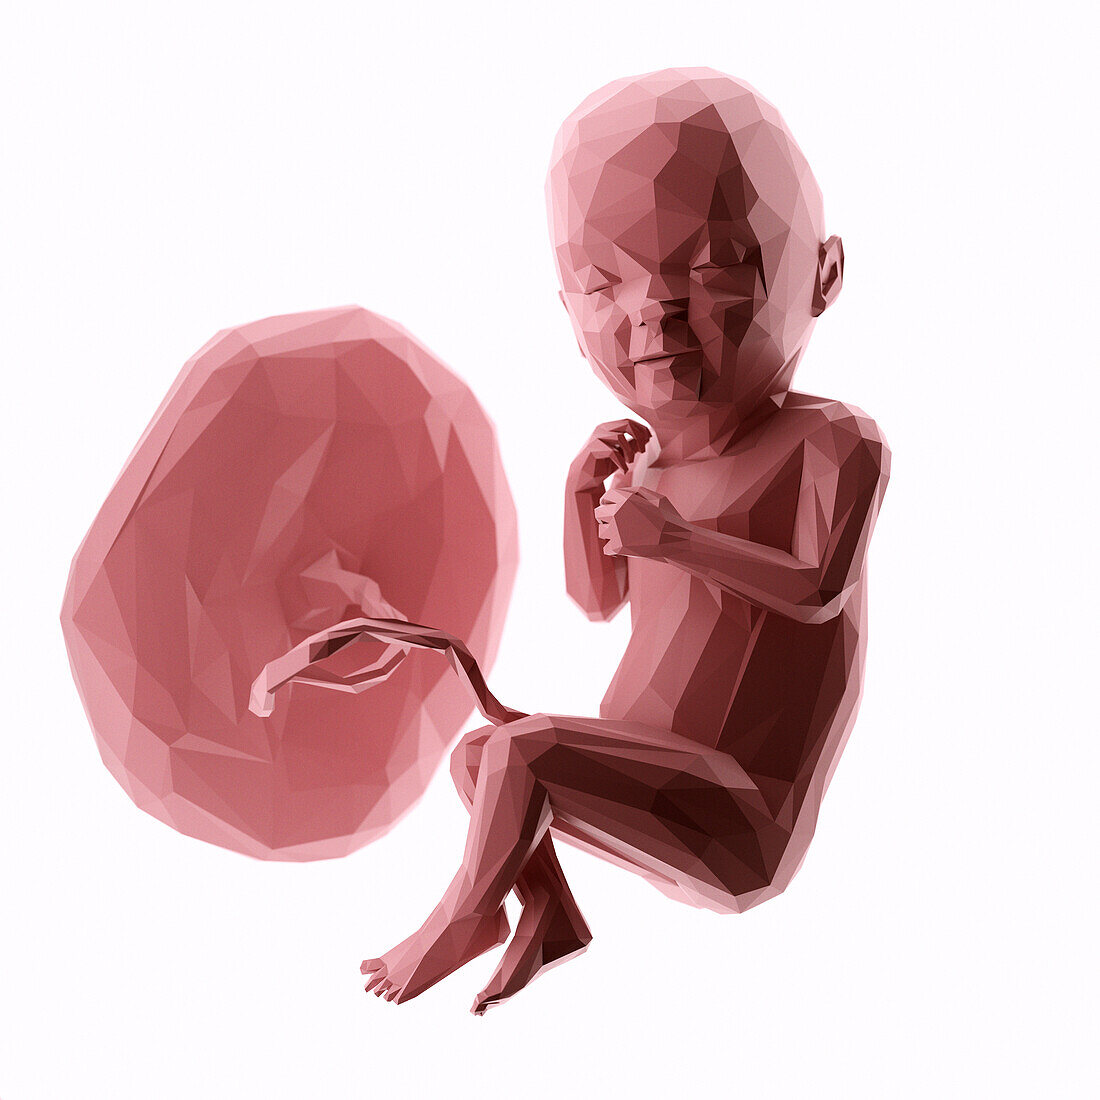 Human fetus at week 33, abstract illustration